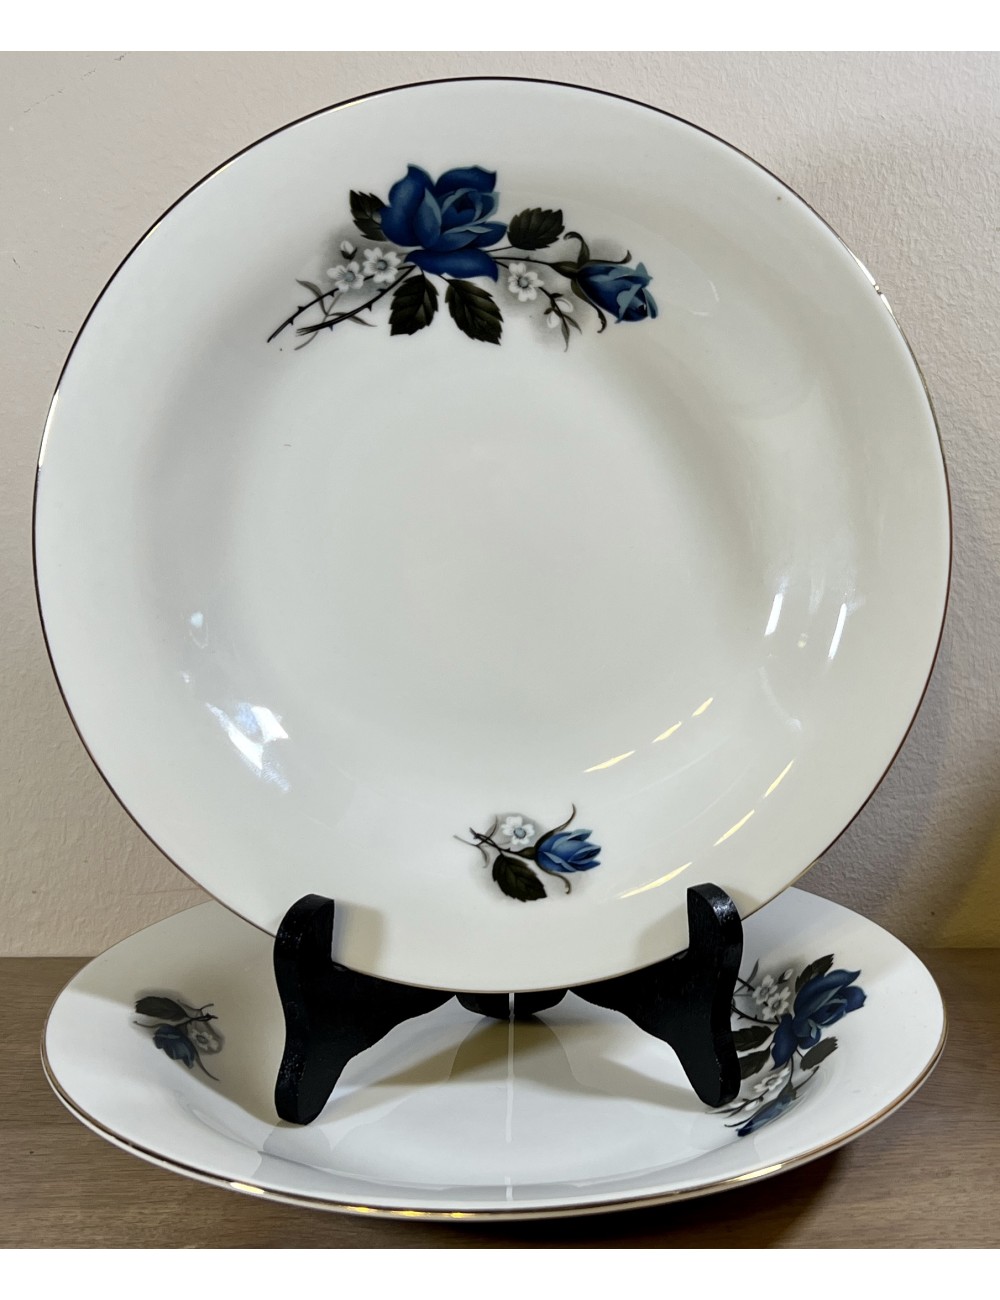 Diep bord / Soepbord / Pastabord - porselein - Wunsiedel Bavaria - décor in wit met blauw met witte bloemen